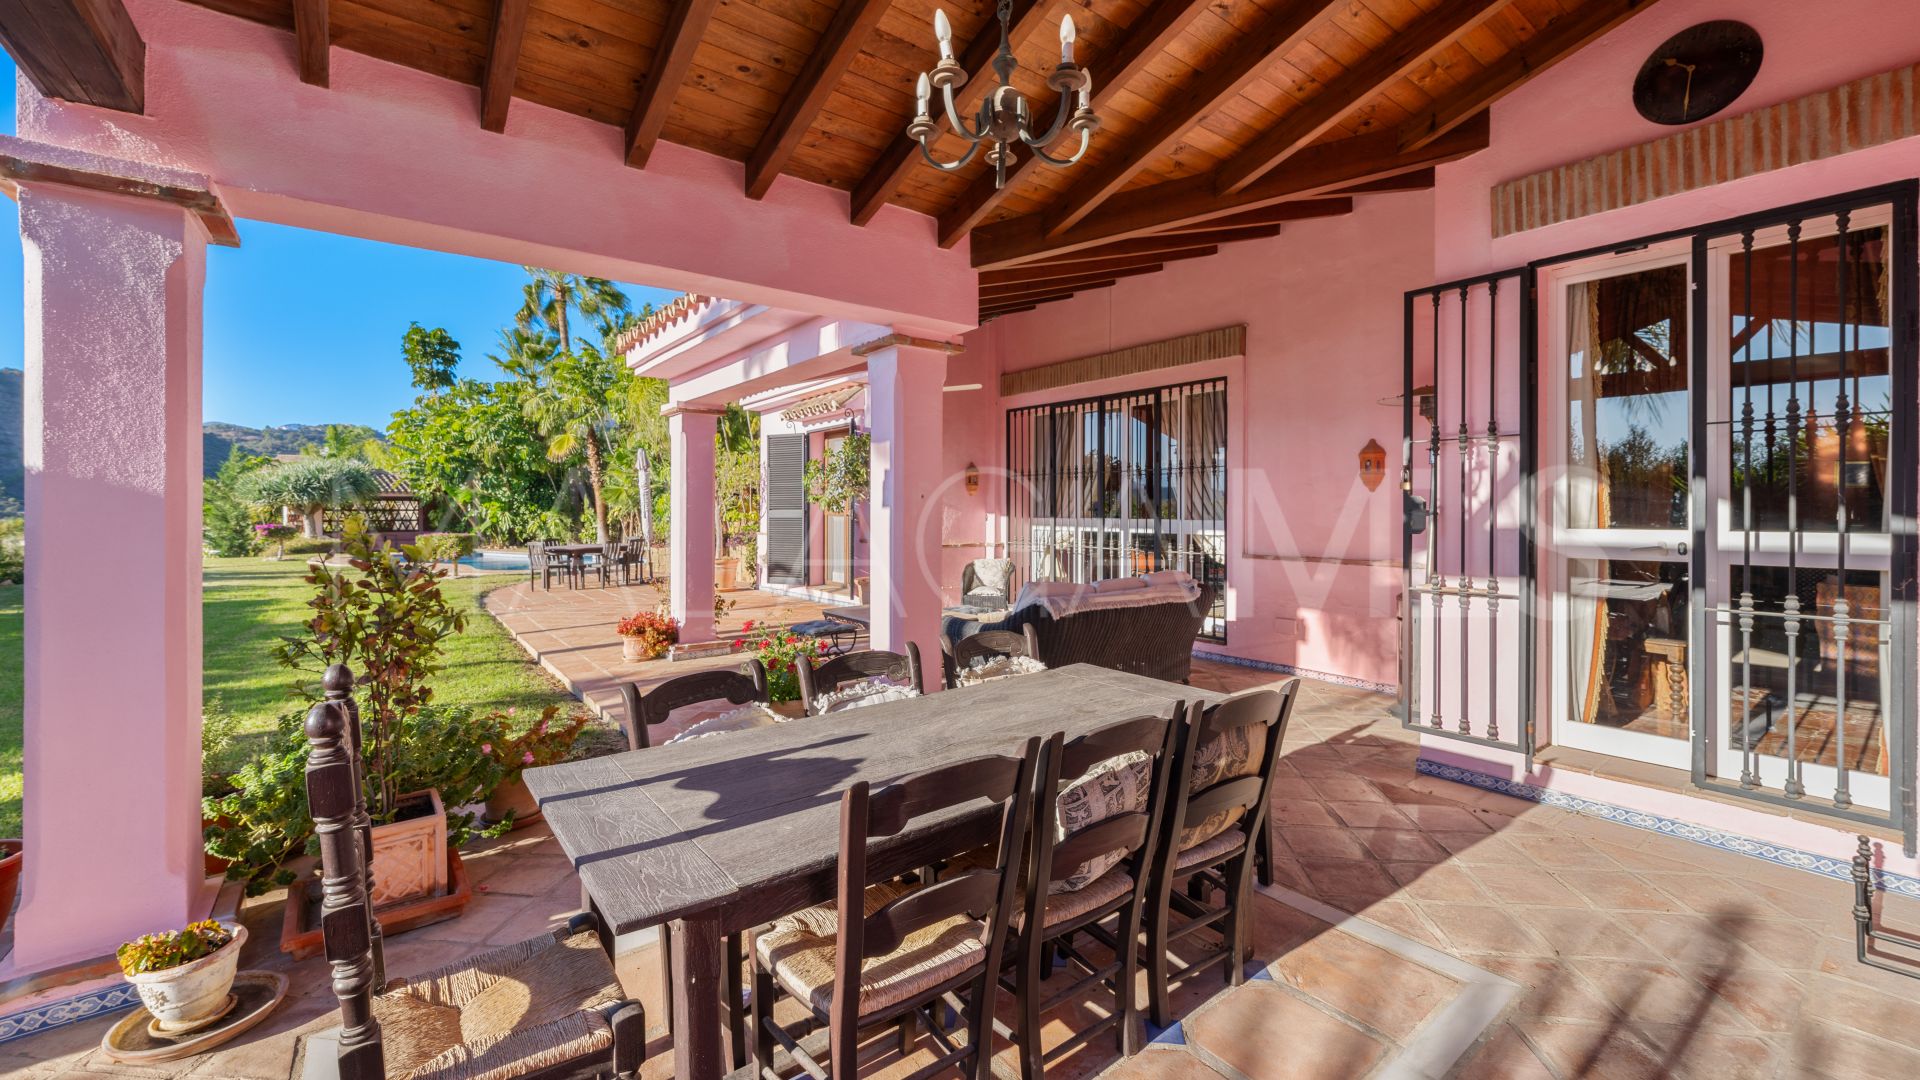 For sale villa in Puerto del Almendro with 5 bedrooms